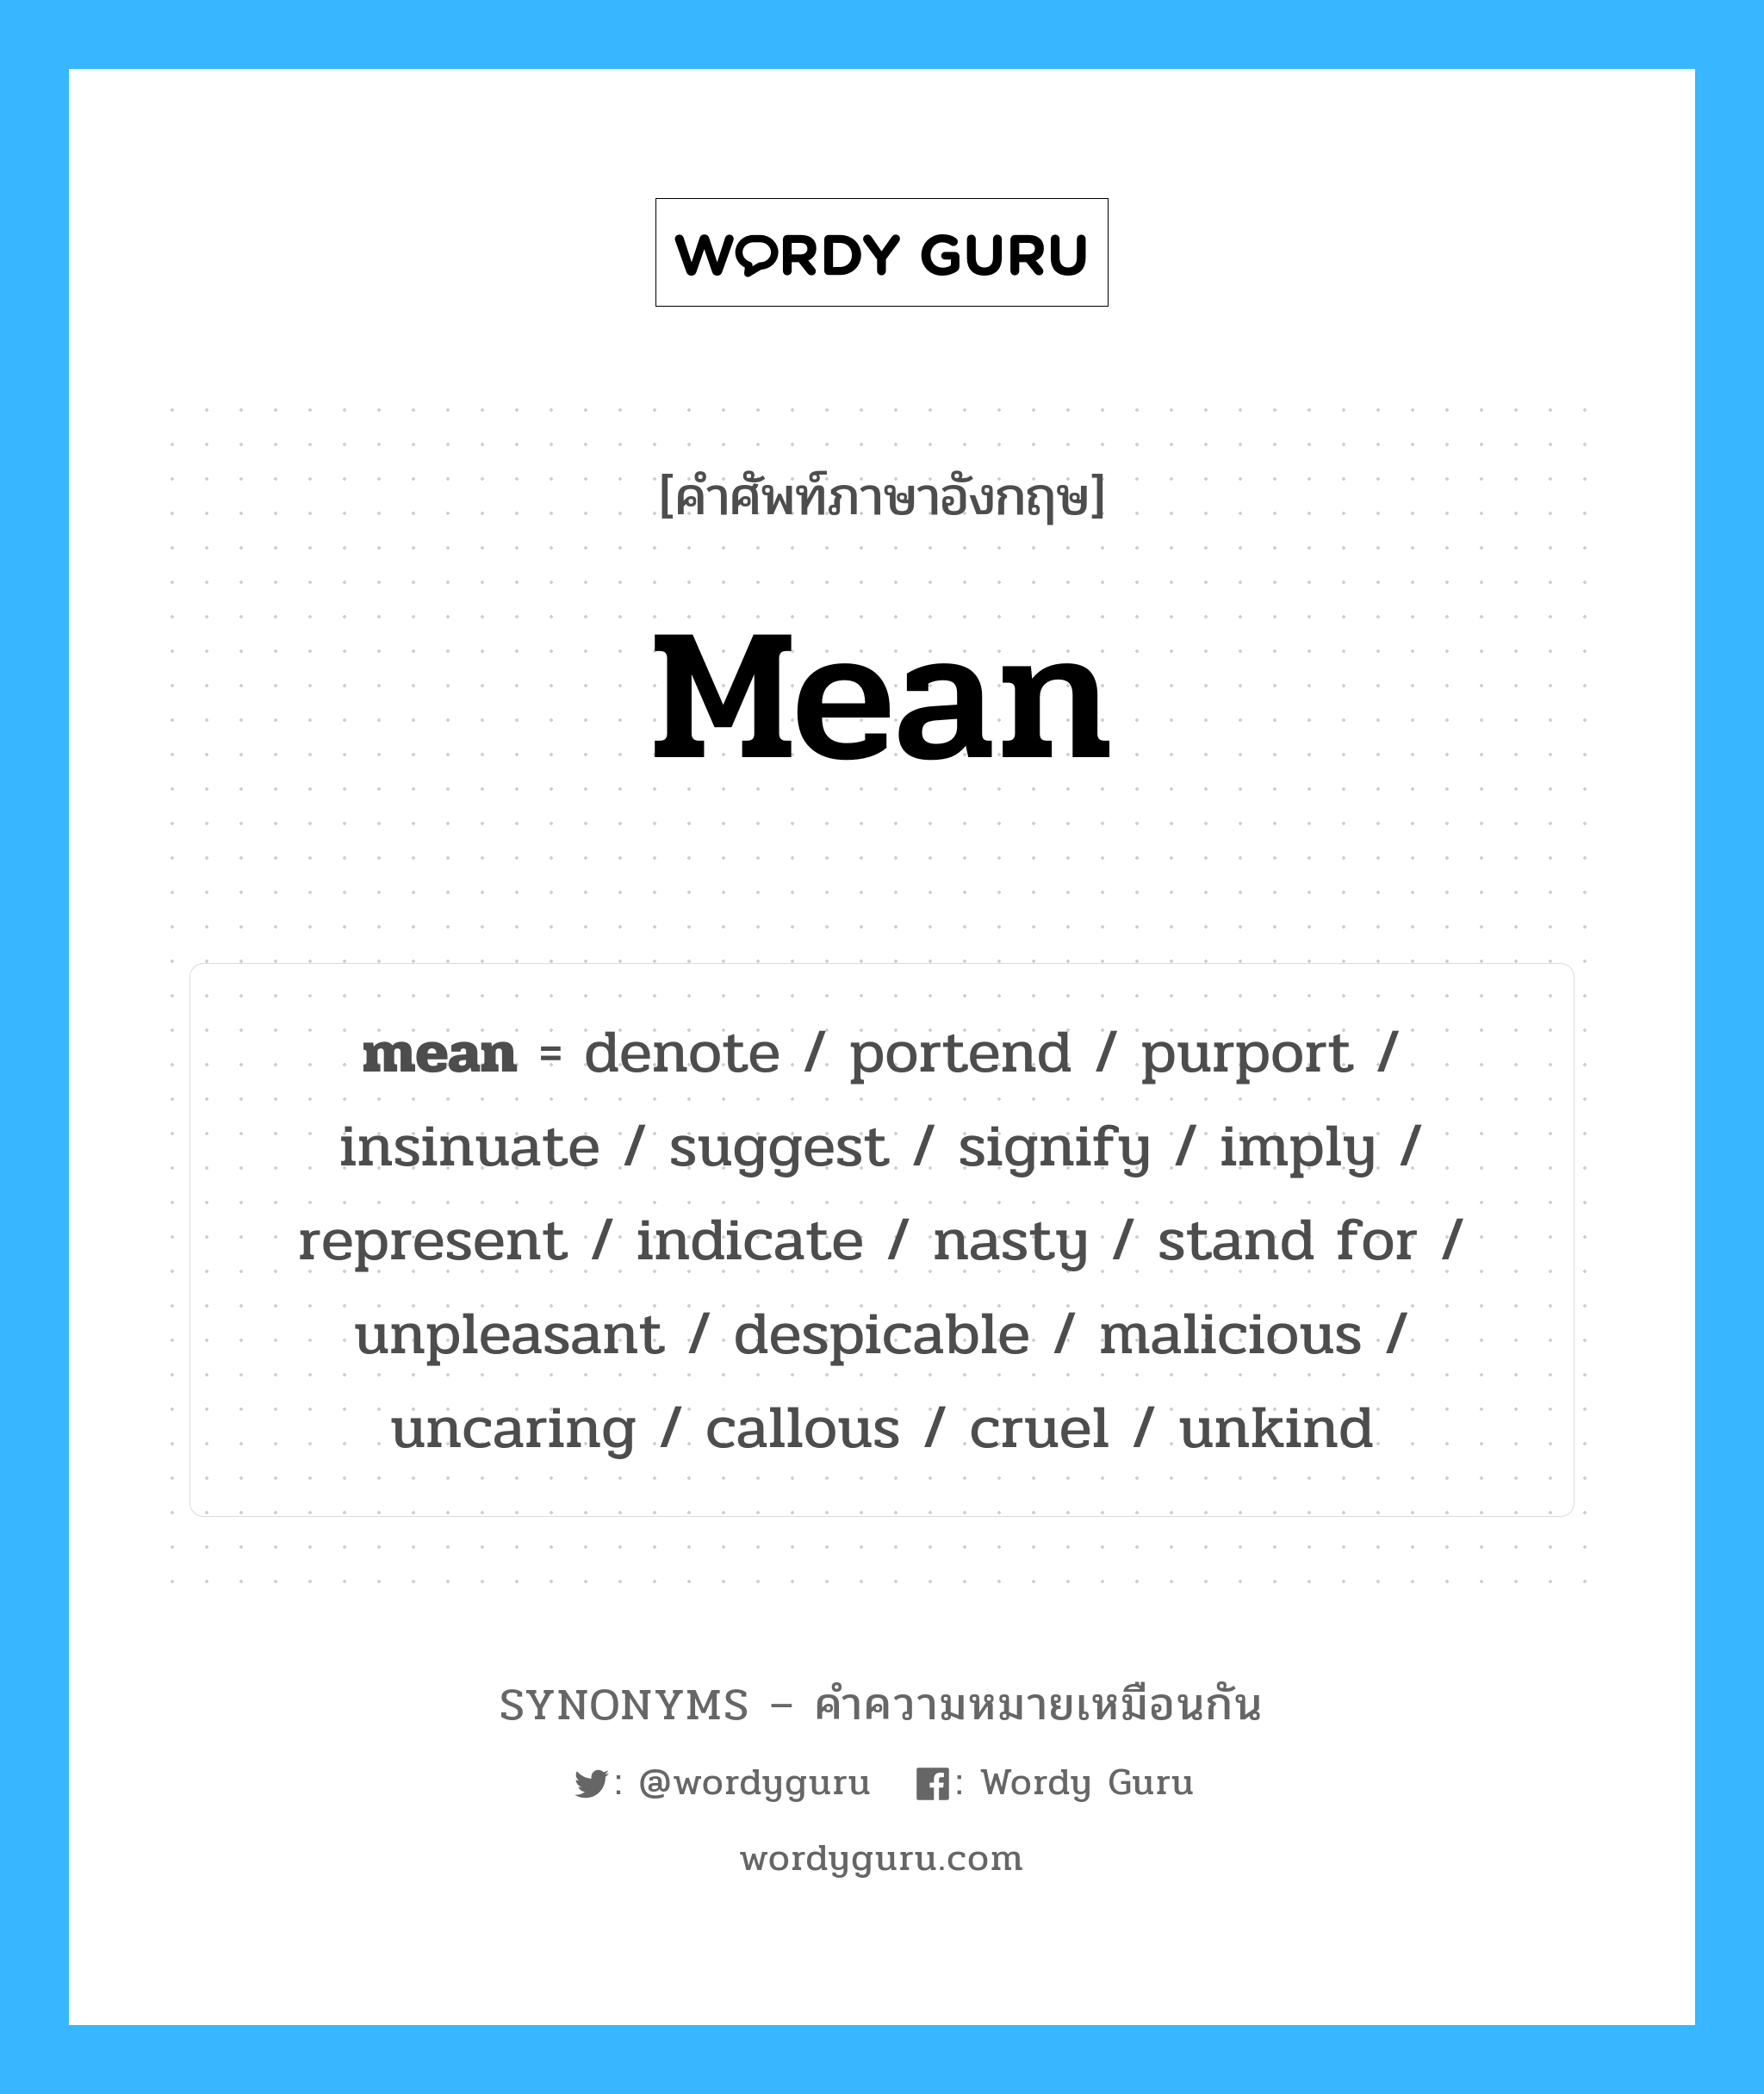 imply เป็นหนึ่งใน mean และมีคำอื่น ๆ อีกดังนี้, คำศัพท์ภาษาอังกฤษ imply ความหมายคล้ายกันกับ mean แปลว่า นัย หมวด mean